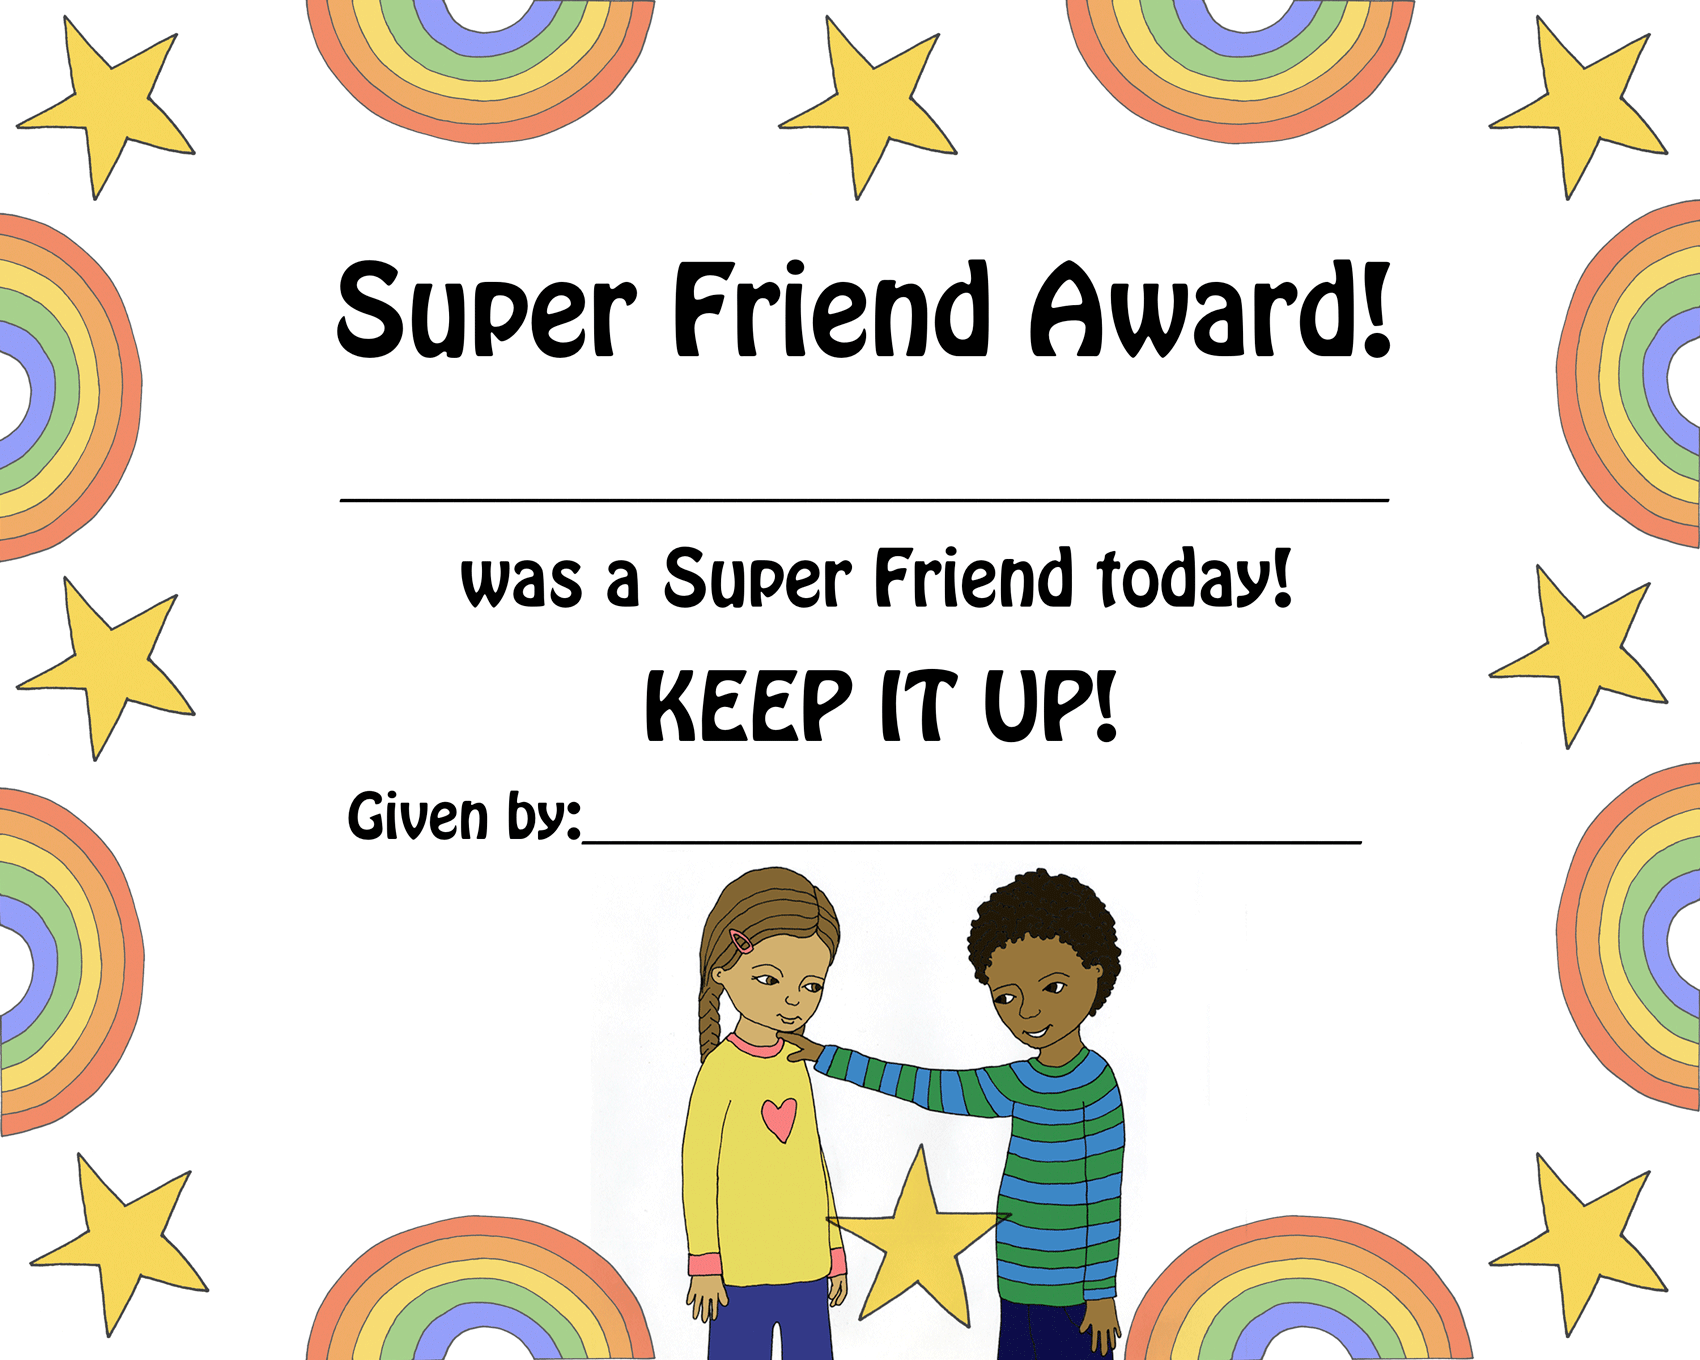 Super Friend award